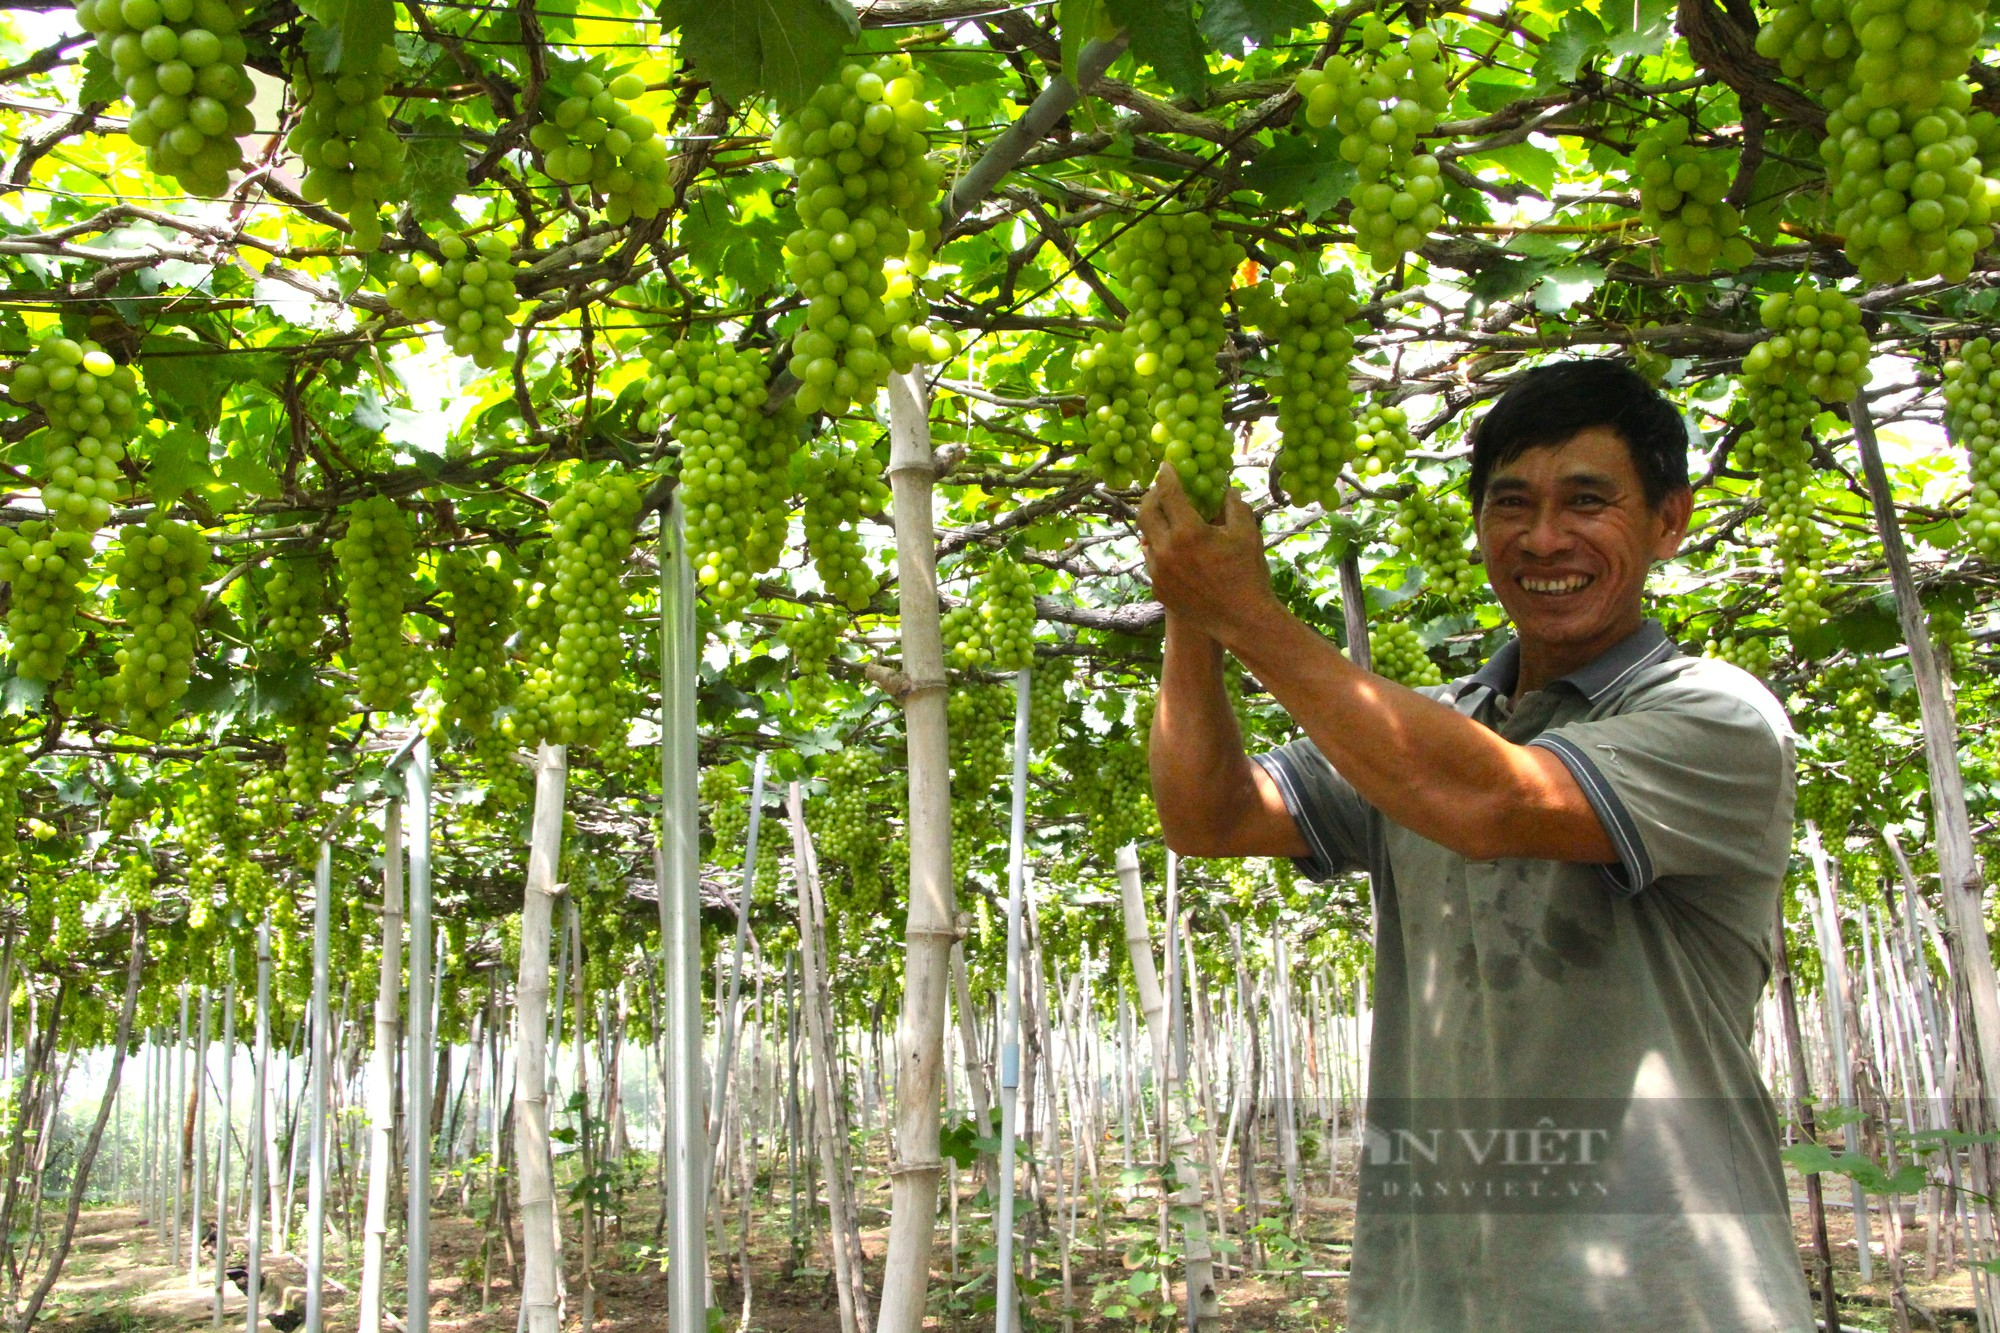 Nông dân làm nhà cho cây nho kiểu gì mà trái ra trĩu cành, thương lái thu mua tận vườn ở Ninh Thuận - Ảnh 1.